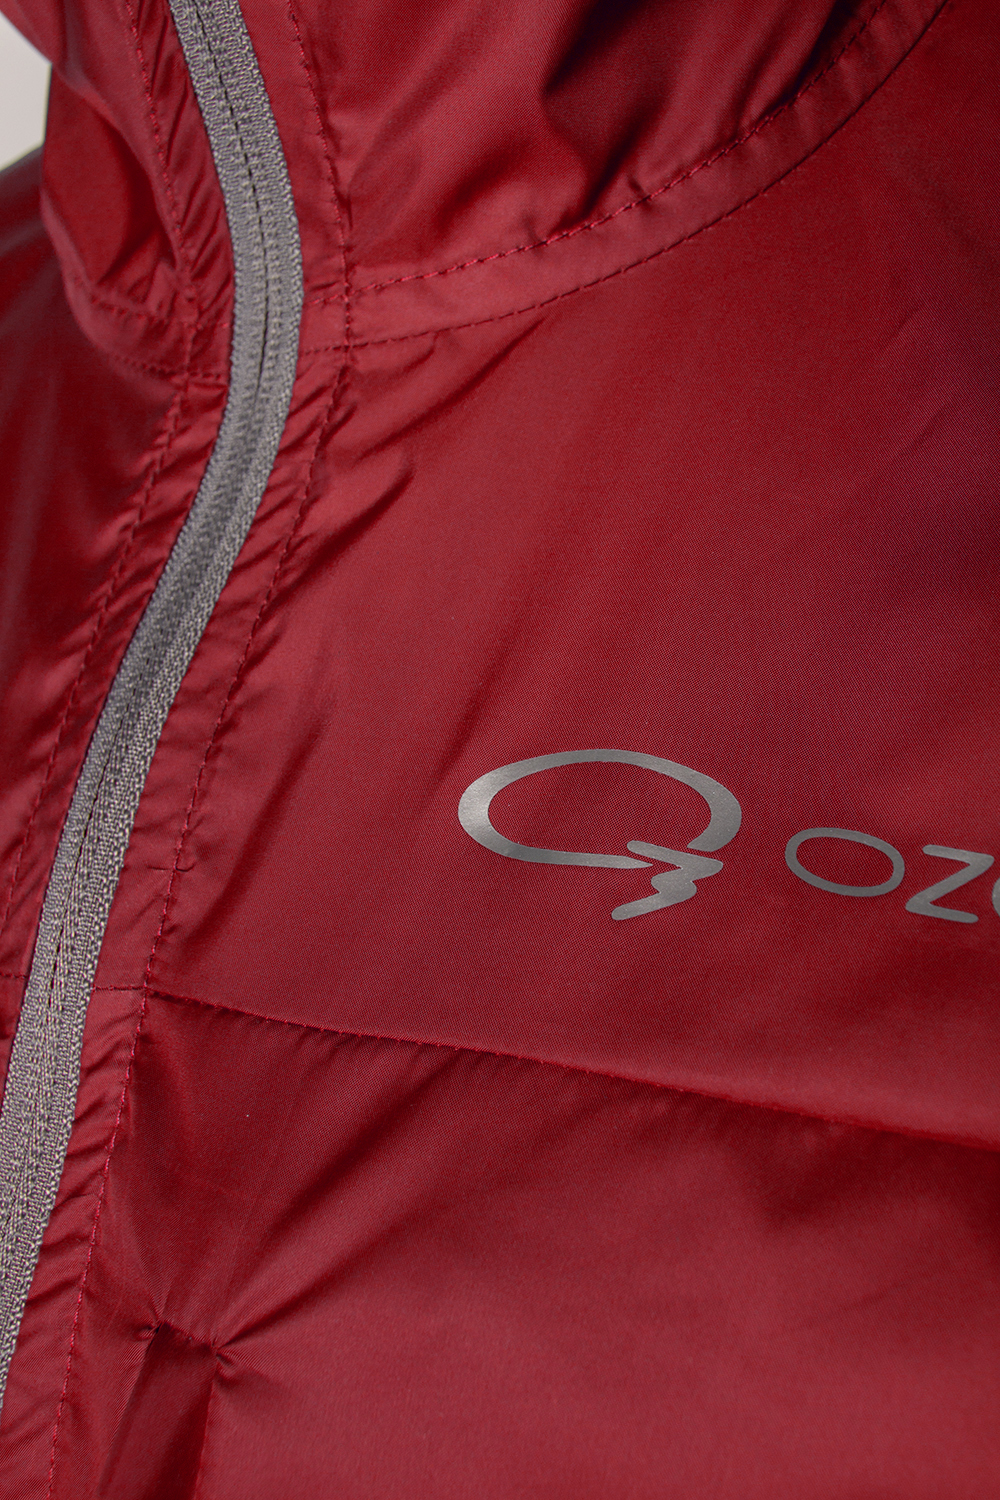 Ветрозащитная куртка Sprint купить в магазине ветрозащитной одежды O3 Ozone